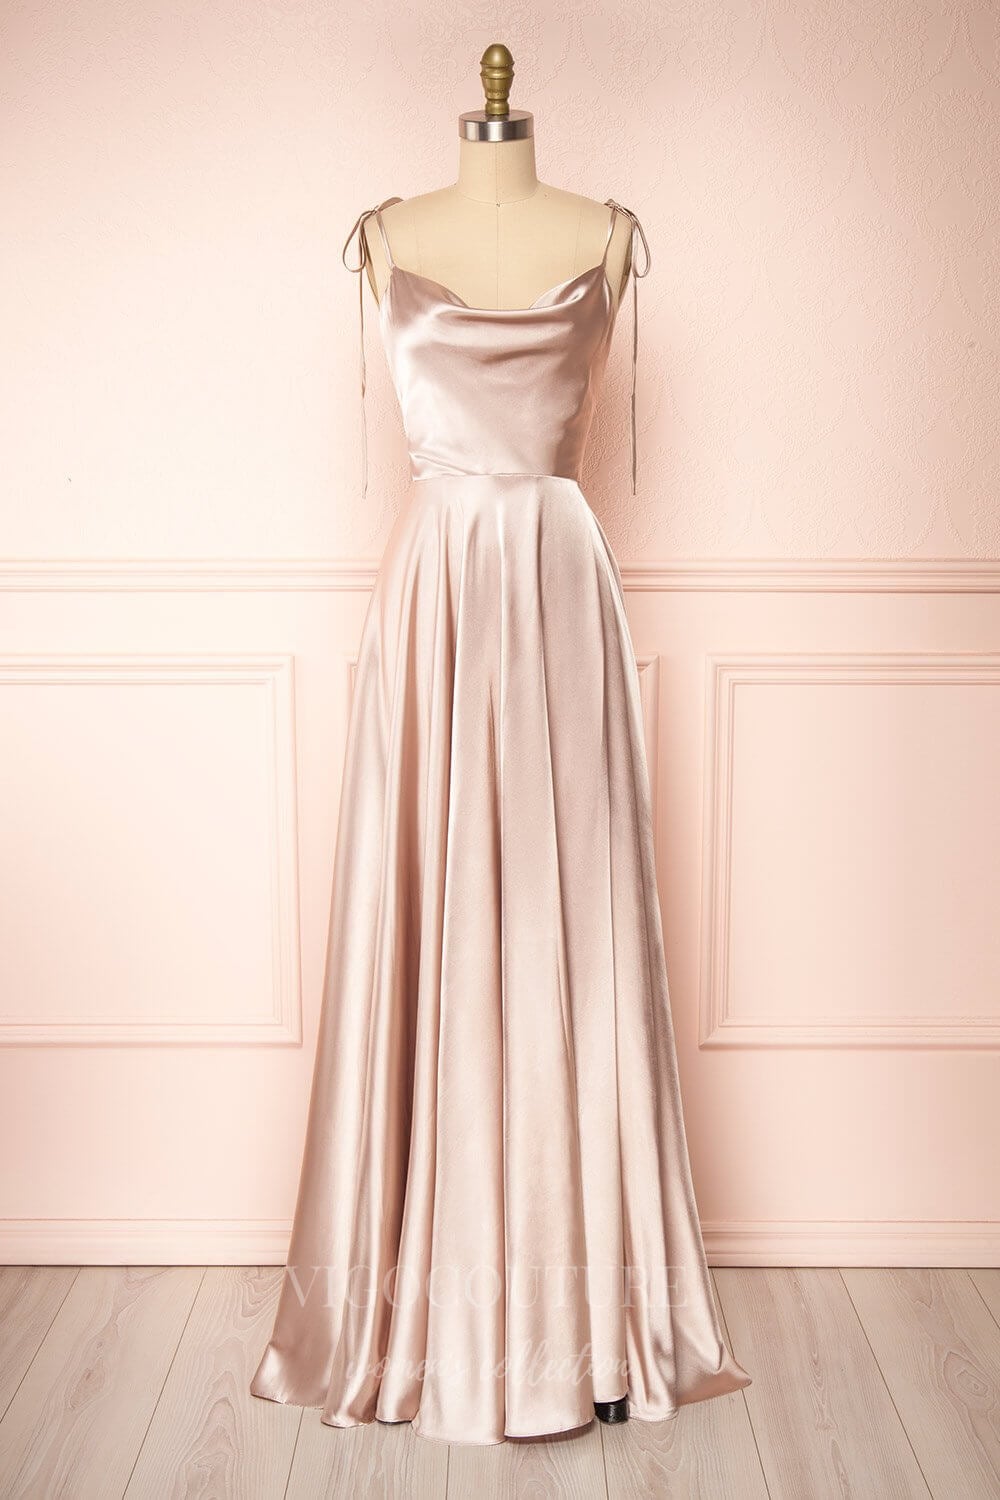 vigocouture-Silver Spaghetti Strap Prom Dress 20574-Prom Dresses-vigocouture-Blush-US2-